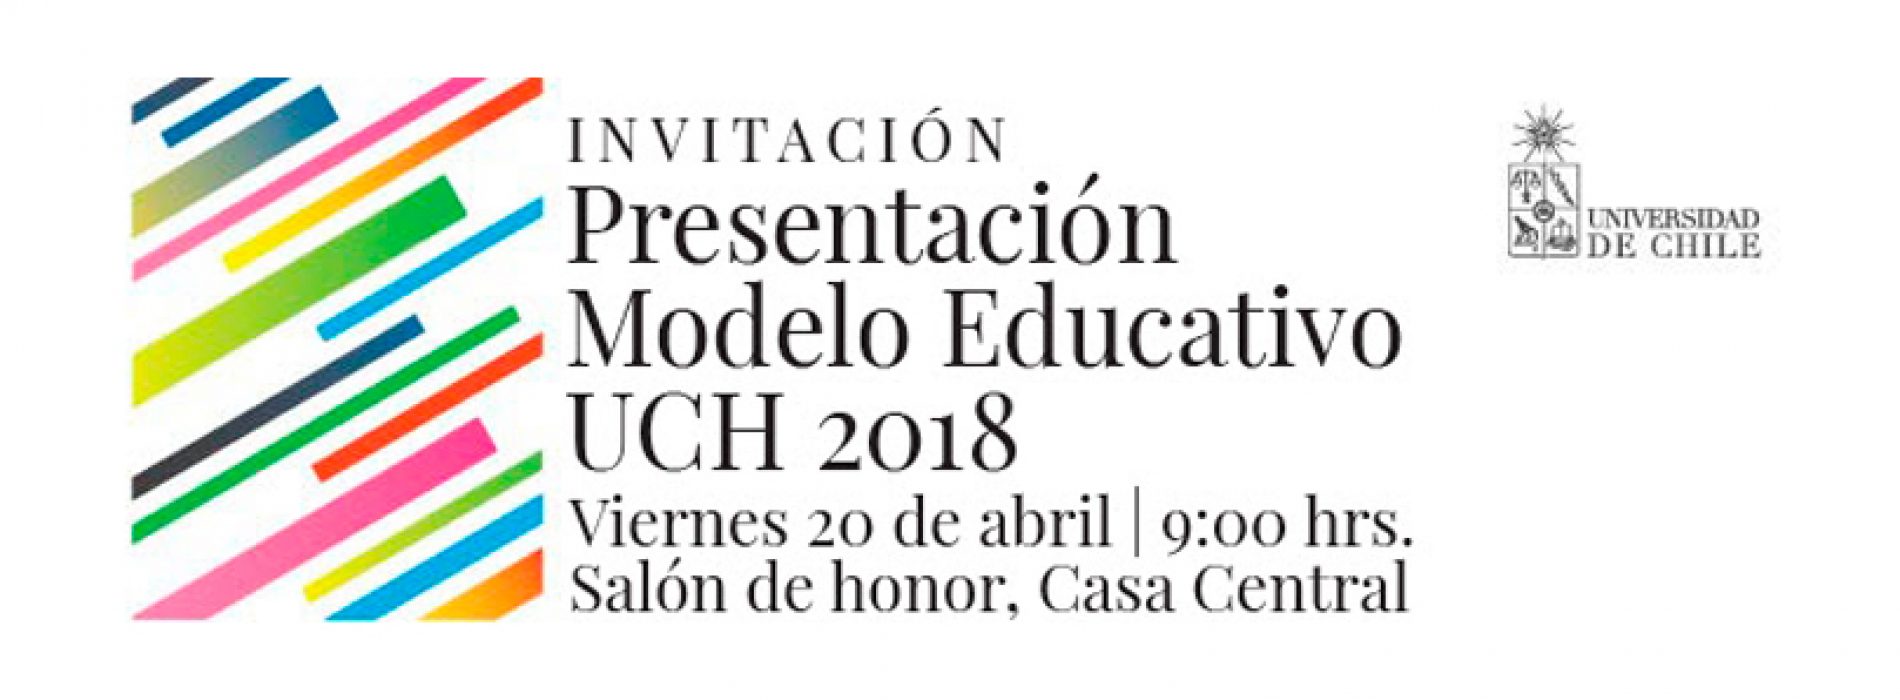 Presentación Modelo Educativo Universidad de Chile 2018